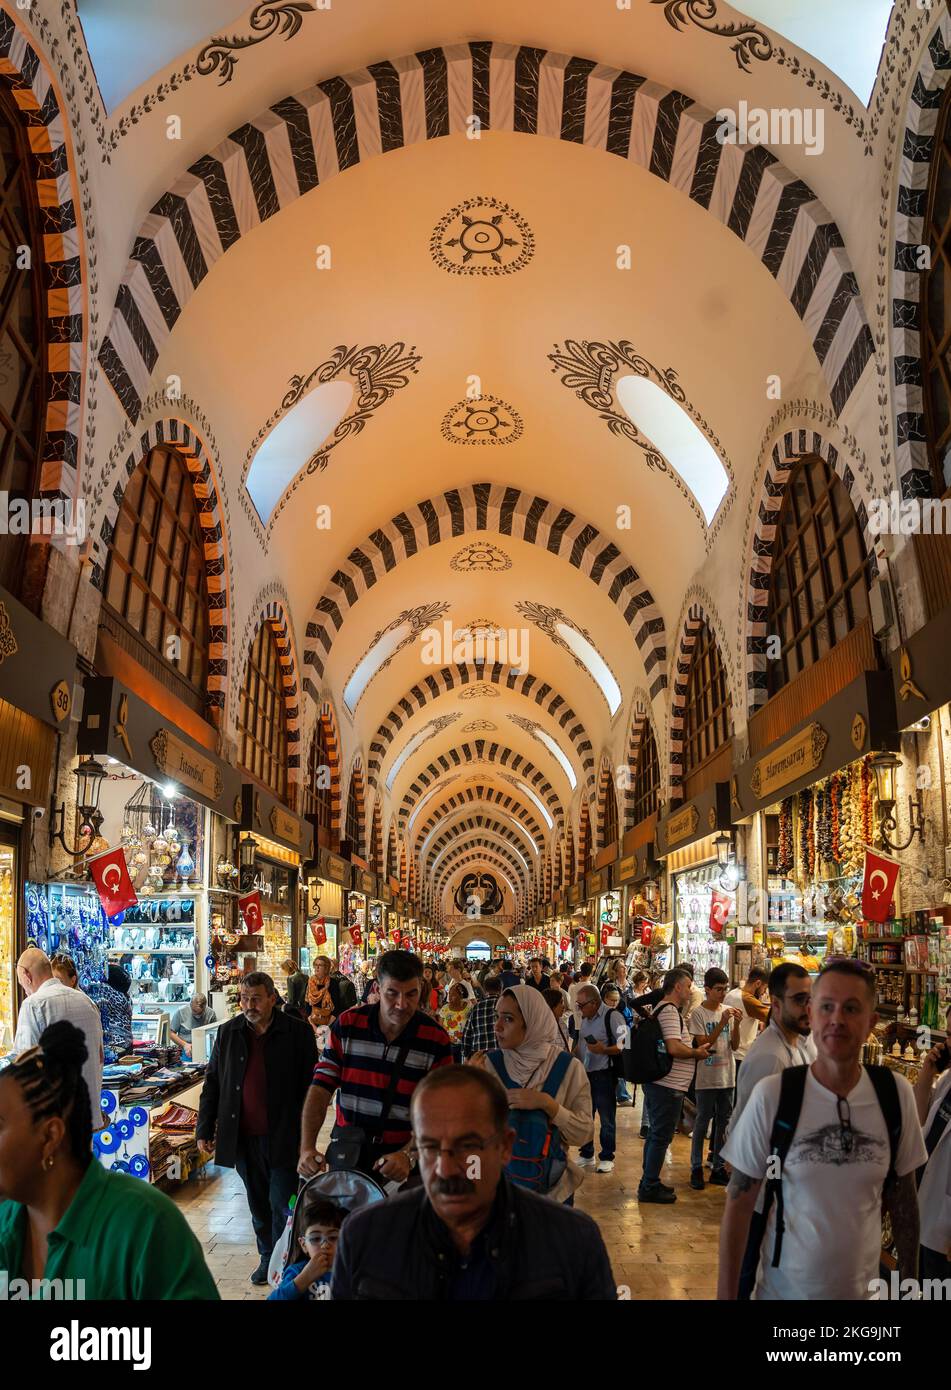 Il bazar delle spezie egiziano di Istanbul Mısır Çarşısı. Rotte commerciali estremamente lunghe e prezzi elevati delle spezie Foto Stock